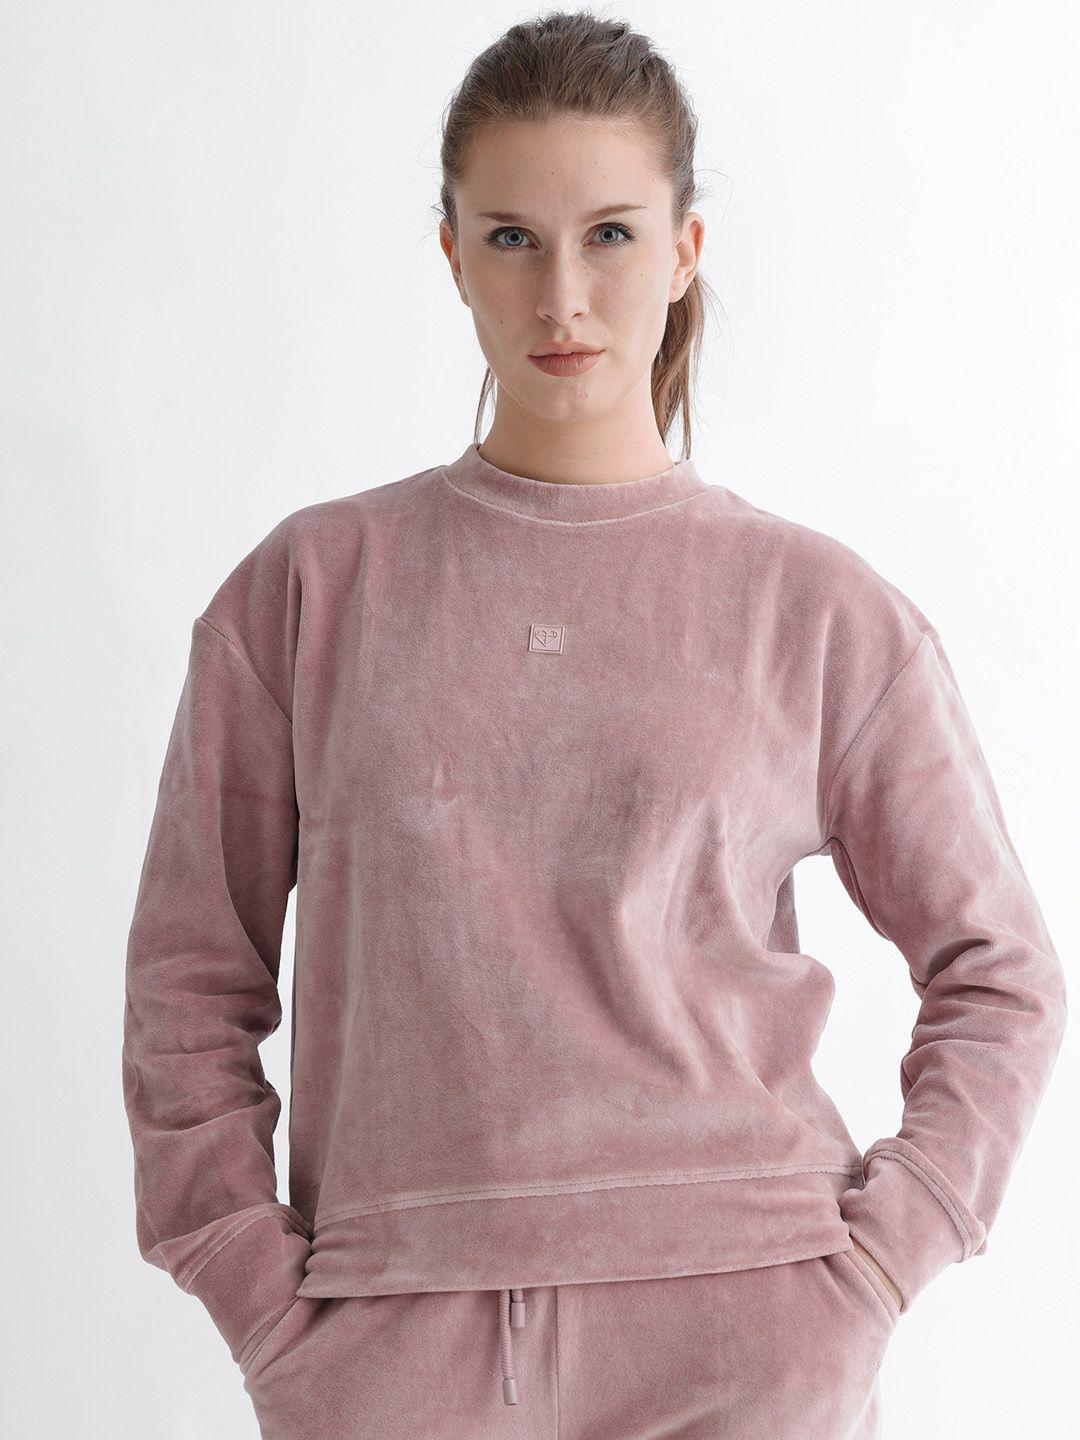 rareism women pink sweatshirt